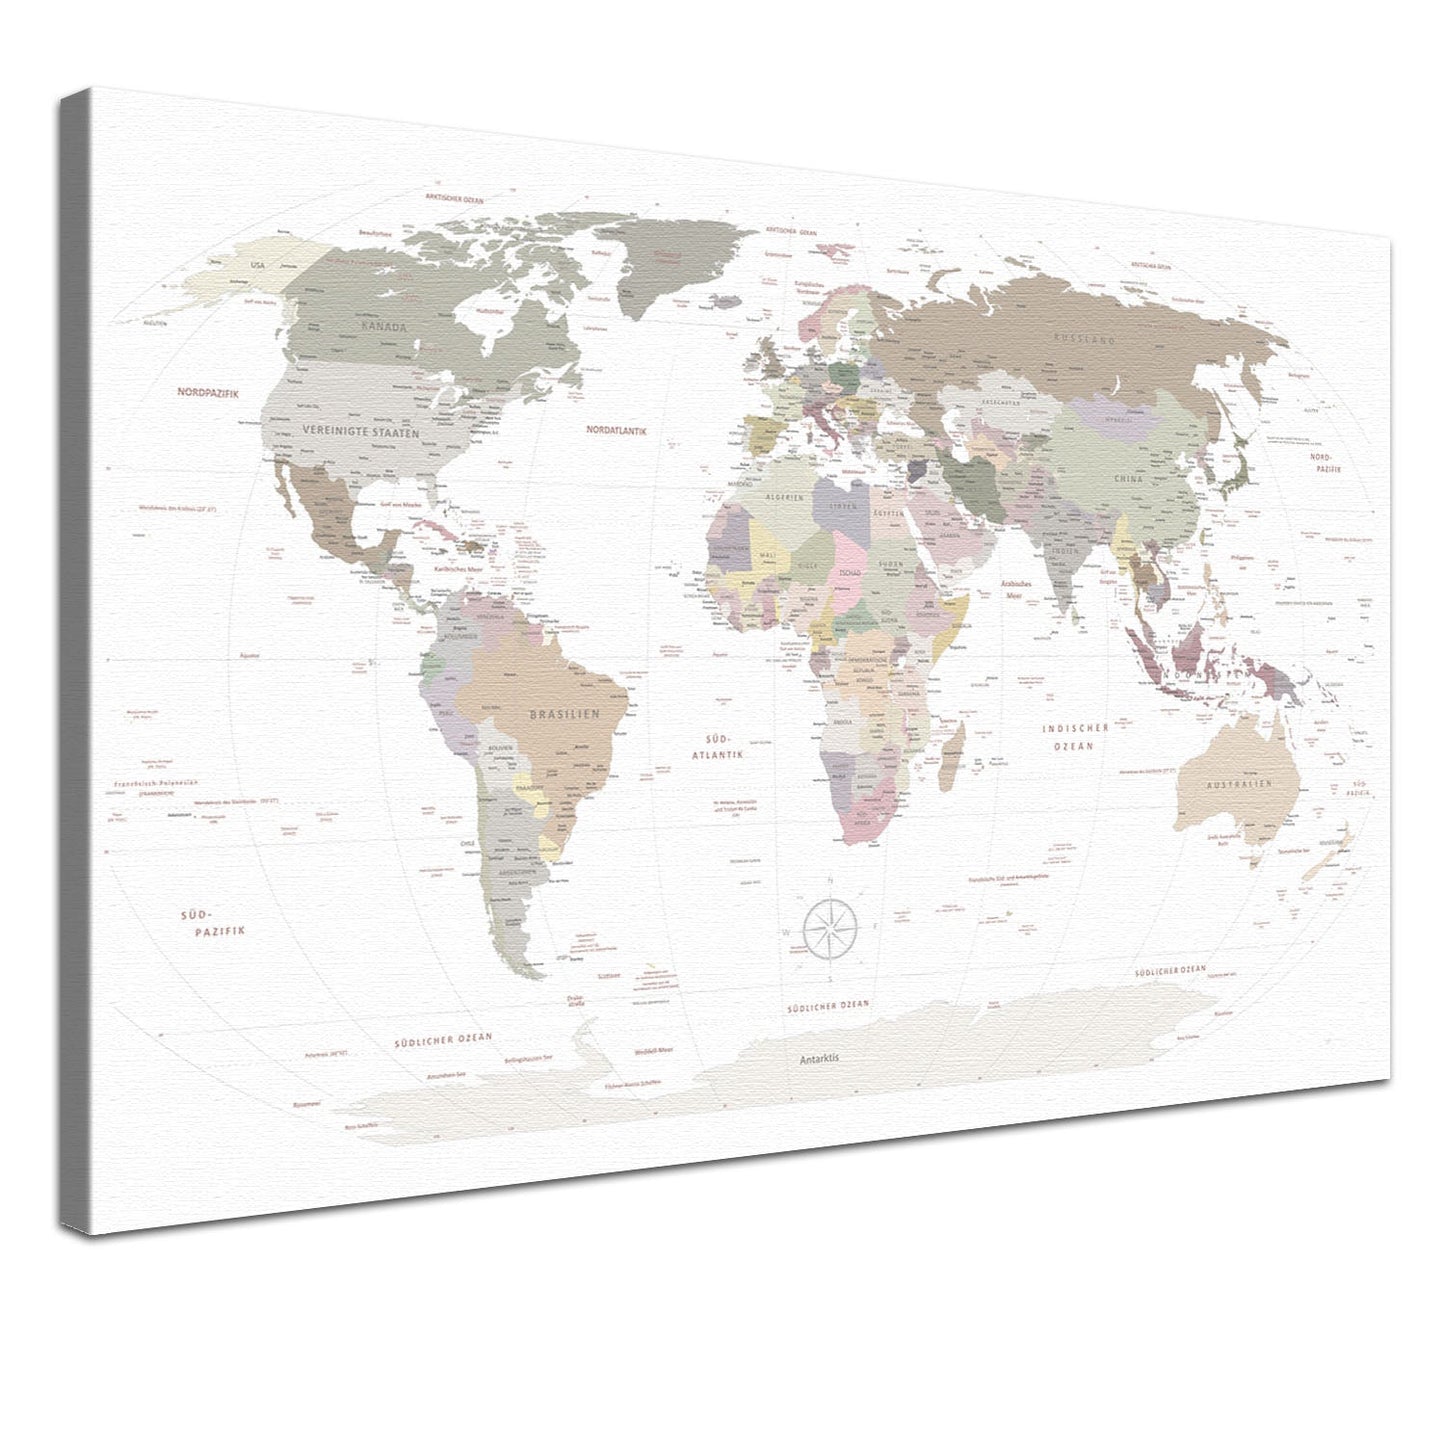 Deine Weltkarte White als edle Leinwand mit natürlicher Baumwolle und nachhaltigen Holzrahmen.